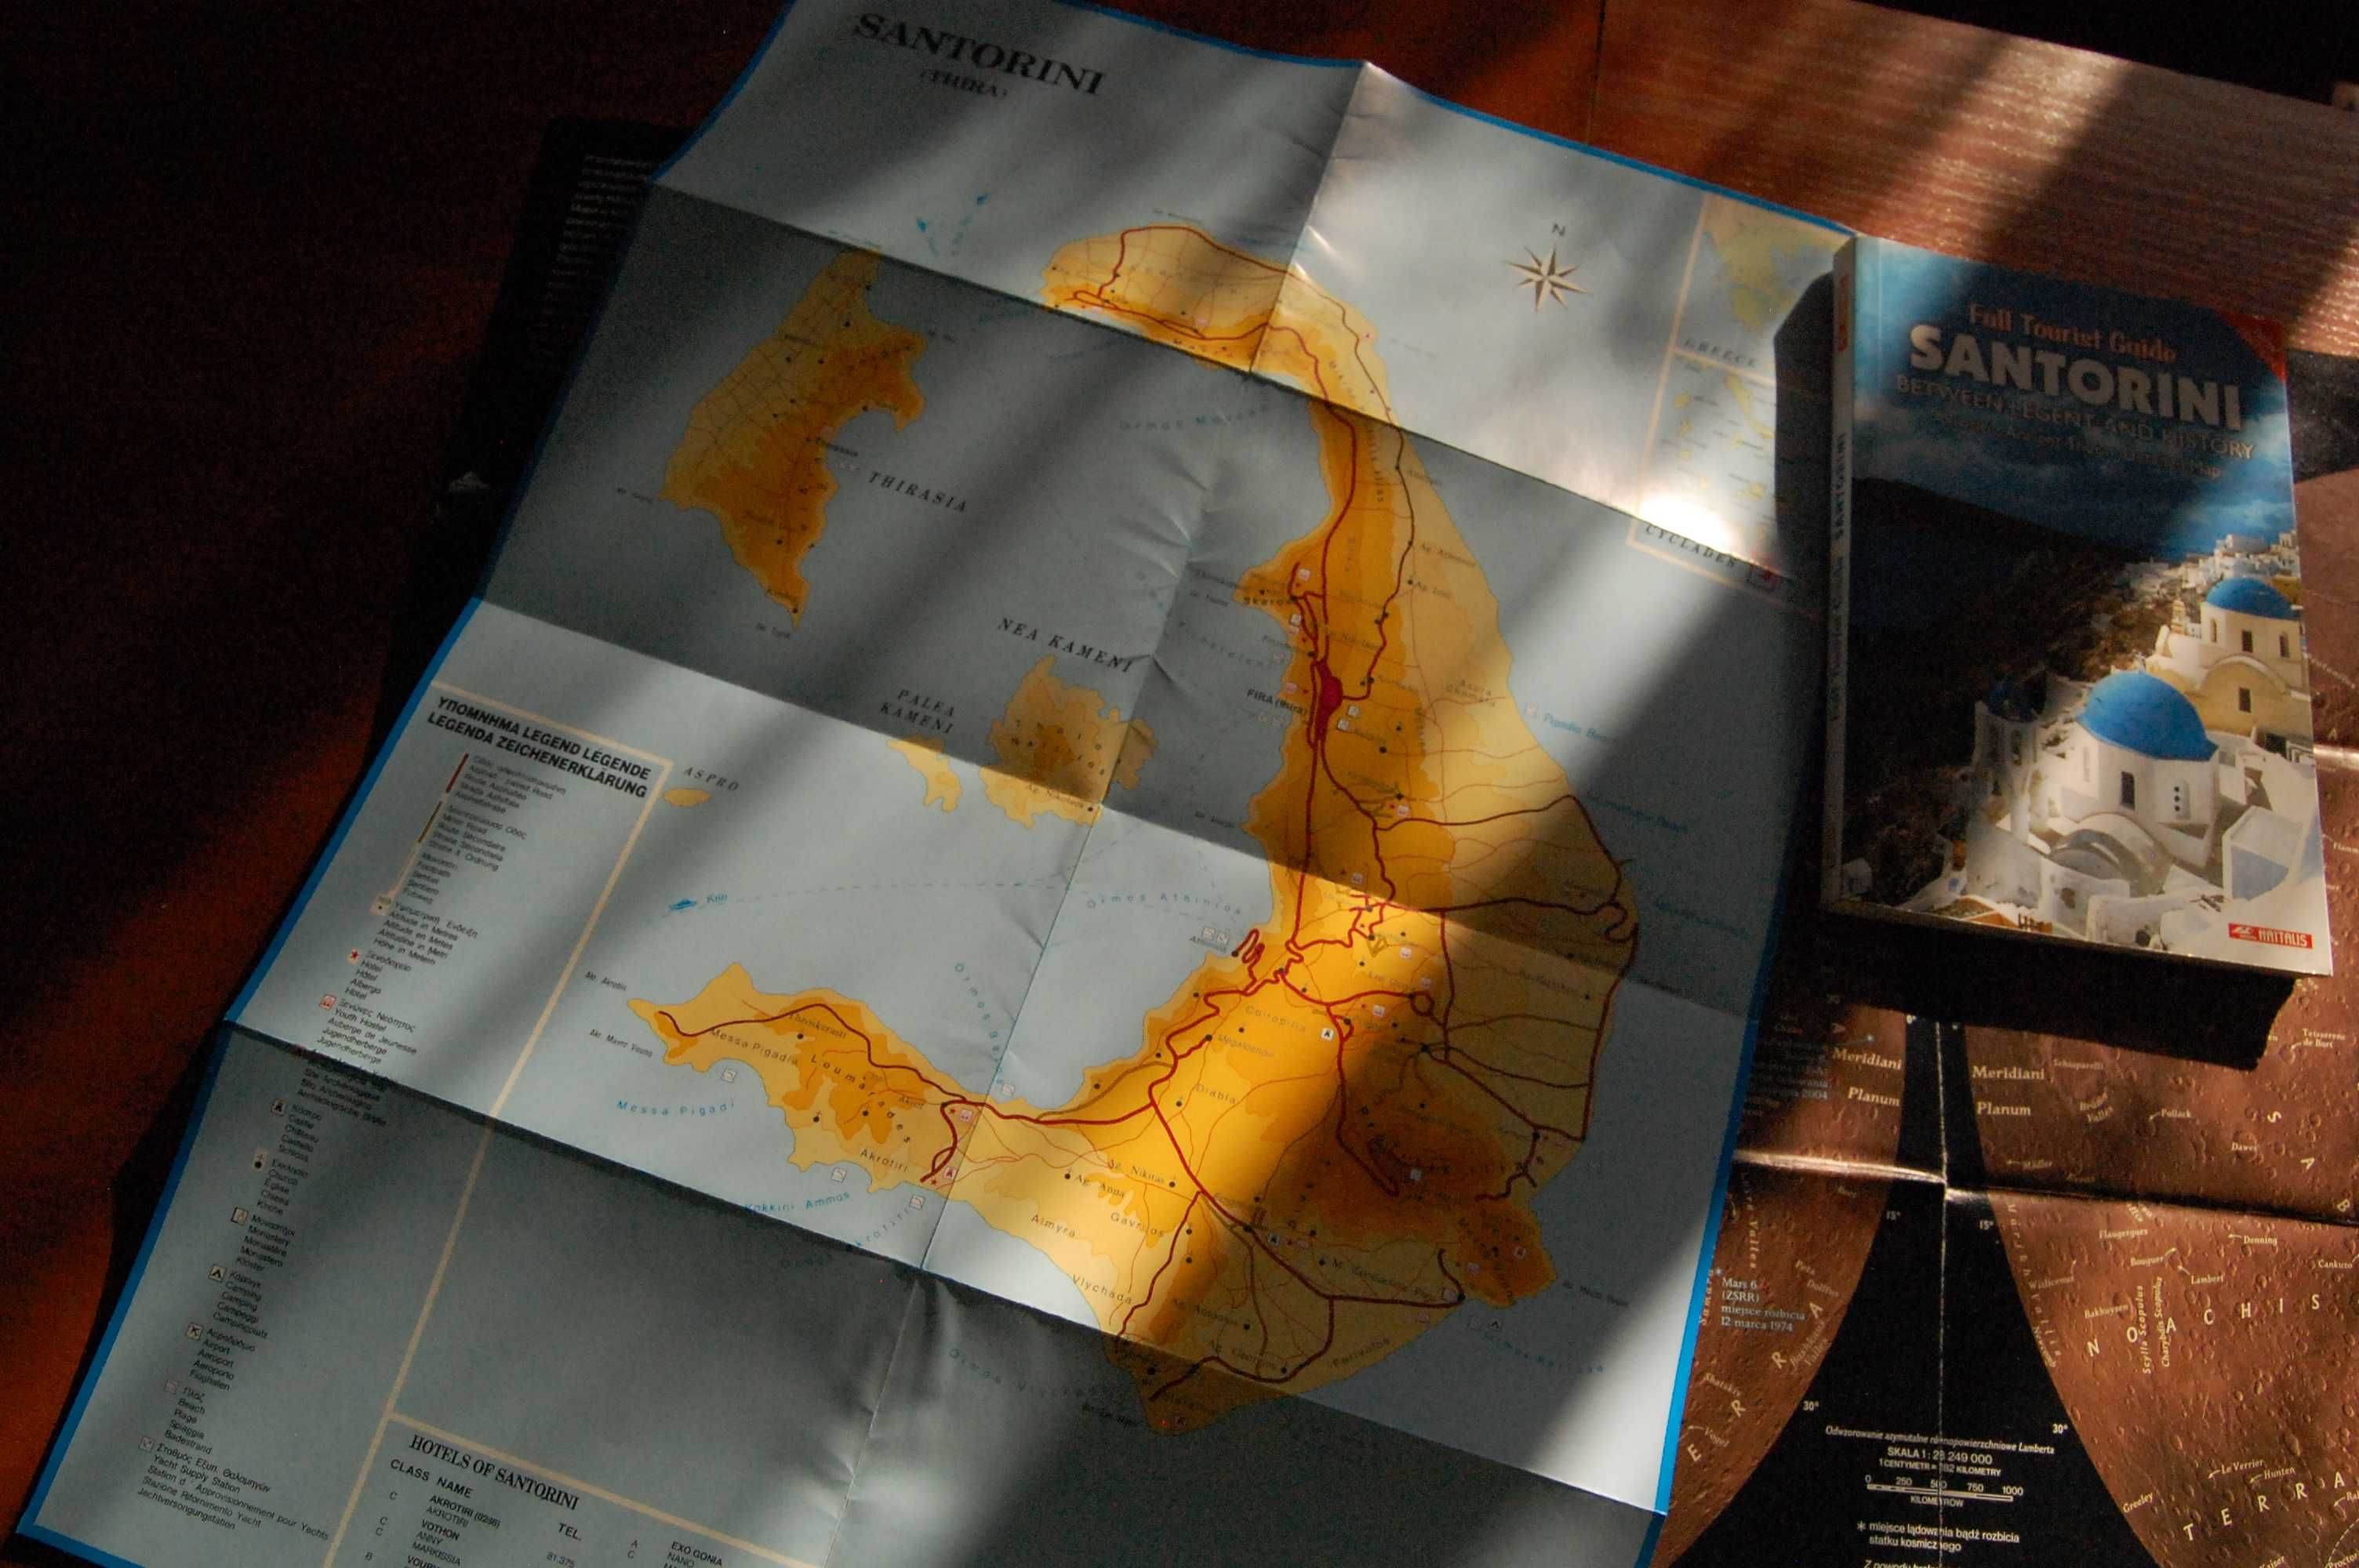 Santorini. Full tourist guide with szczegółową mapą!